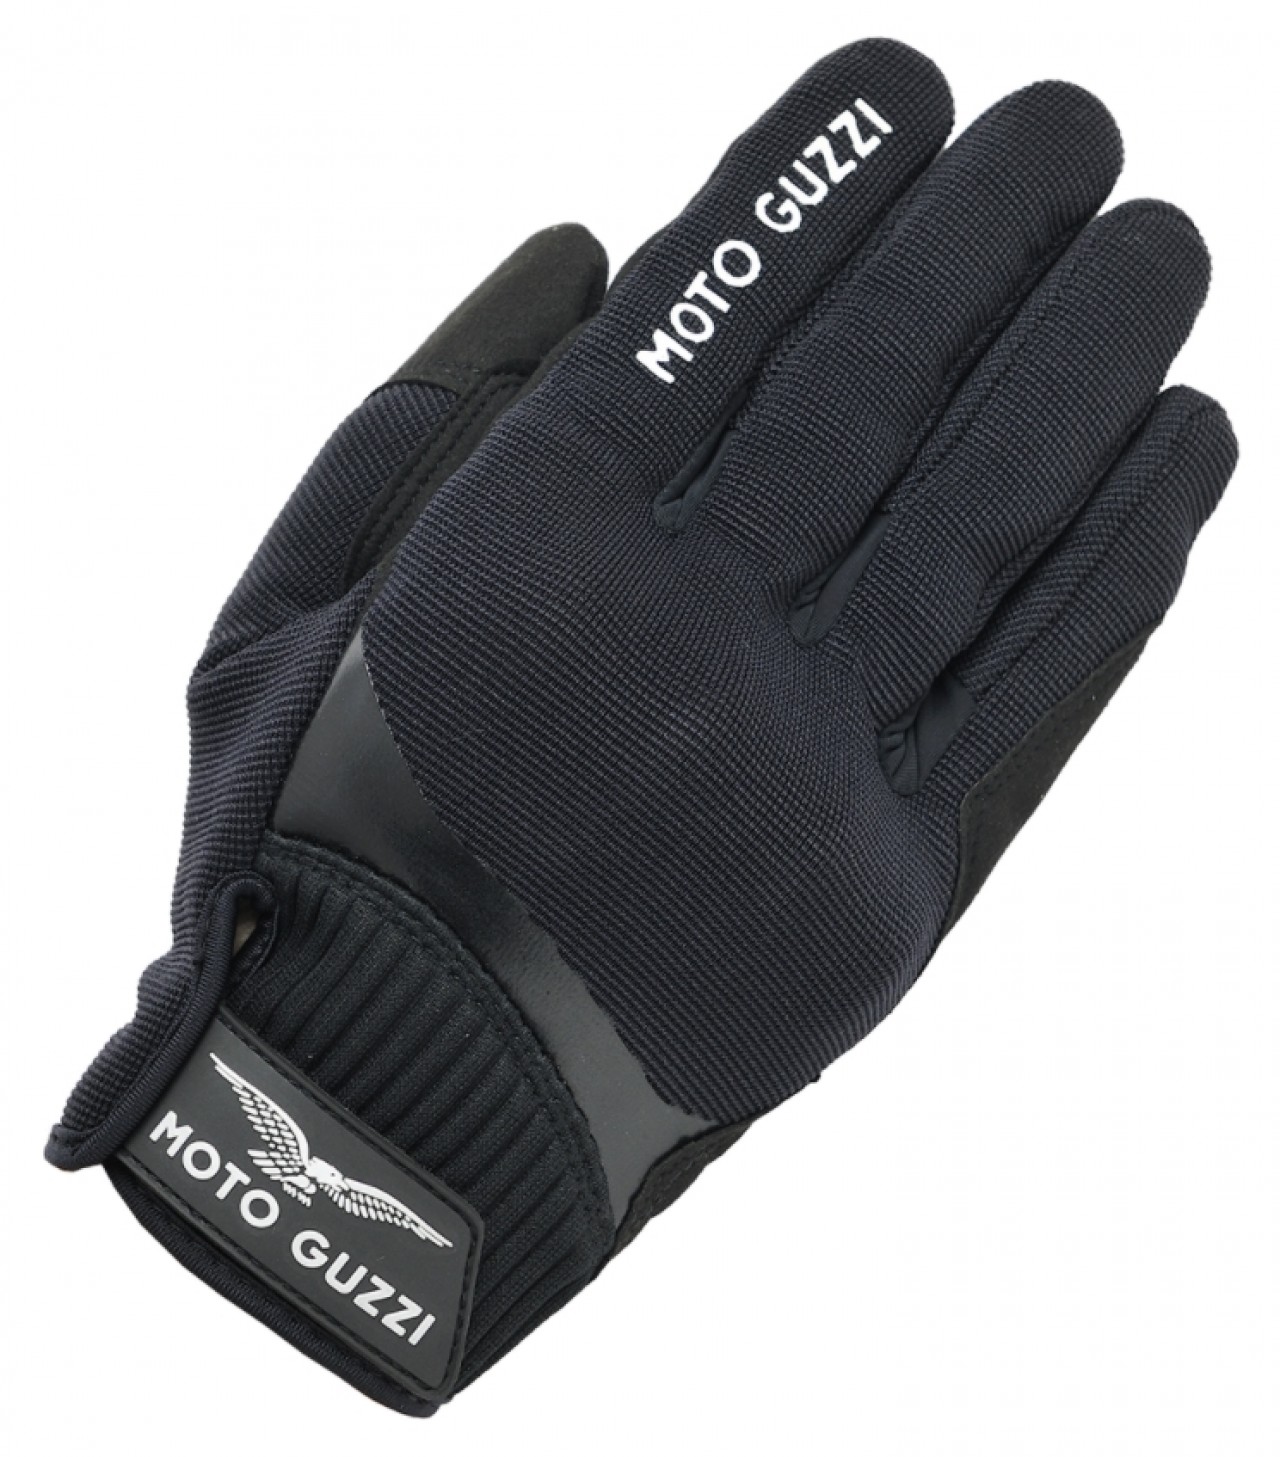 ventilados textil guantes Verano textil guantes motocicleta-sport guantes 